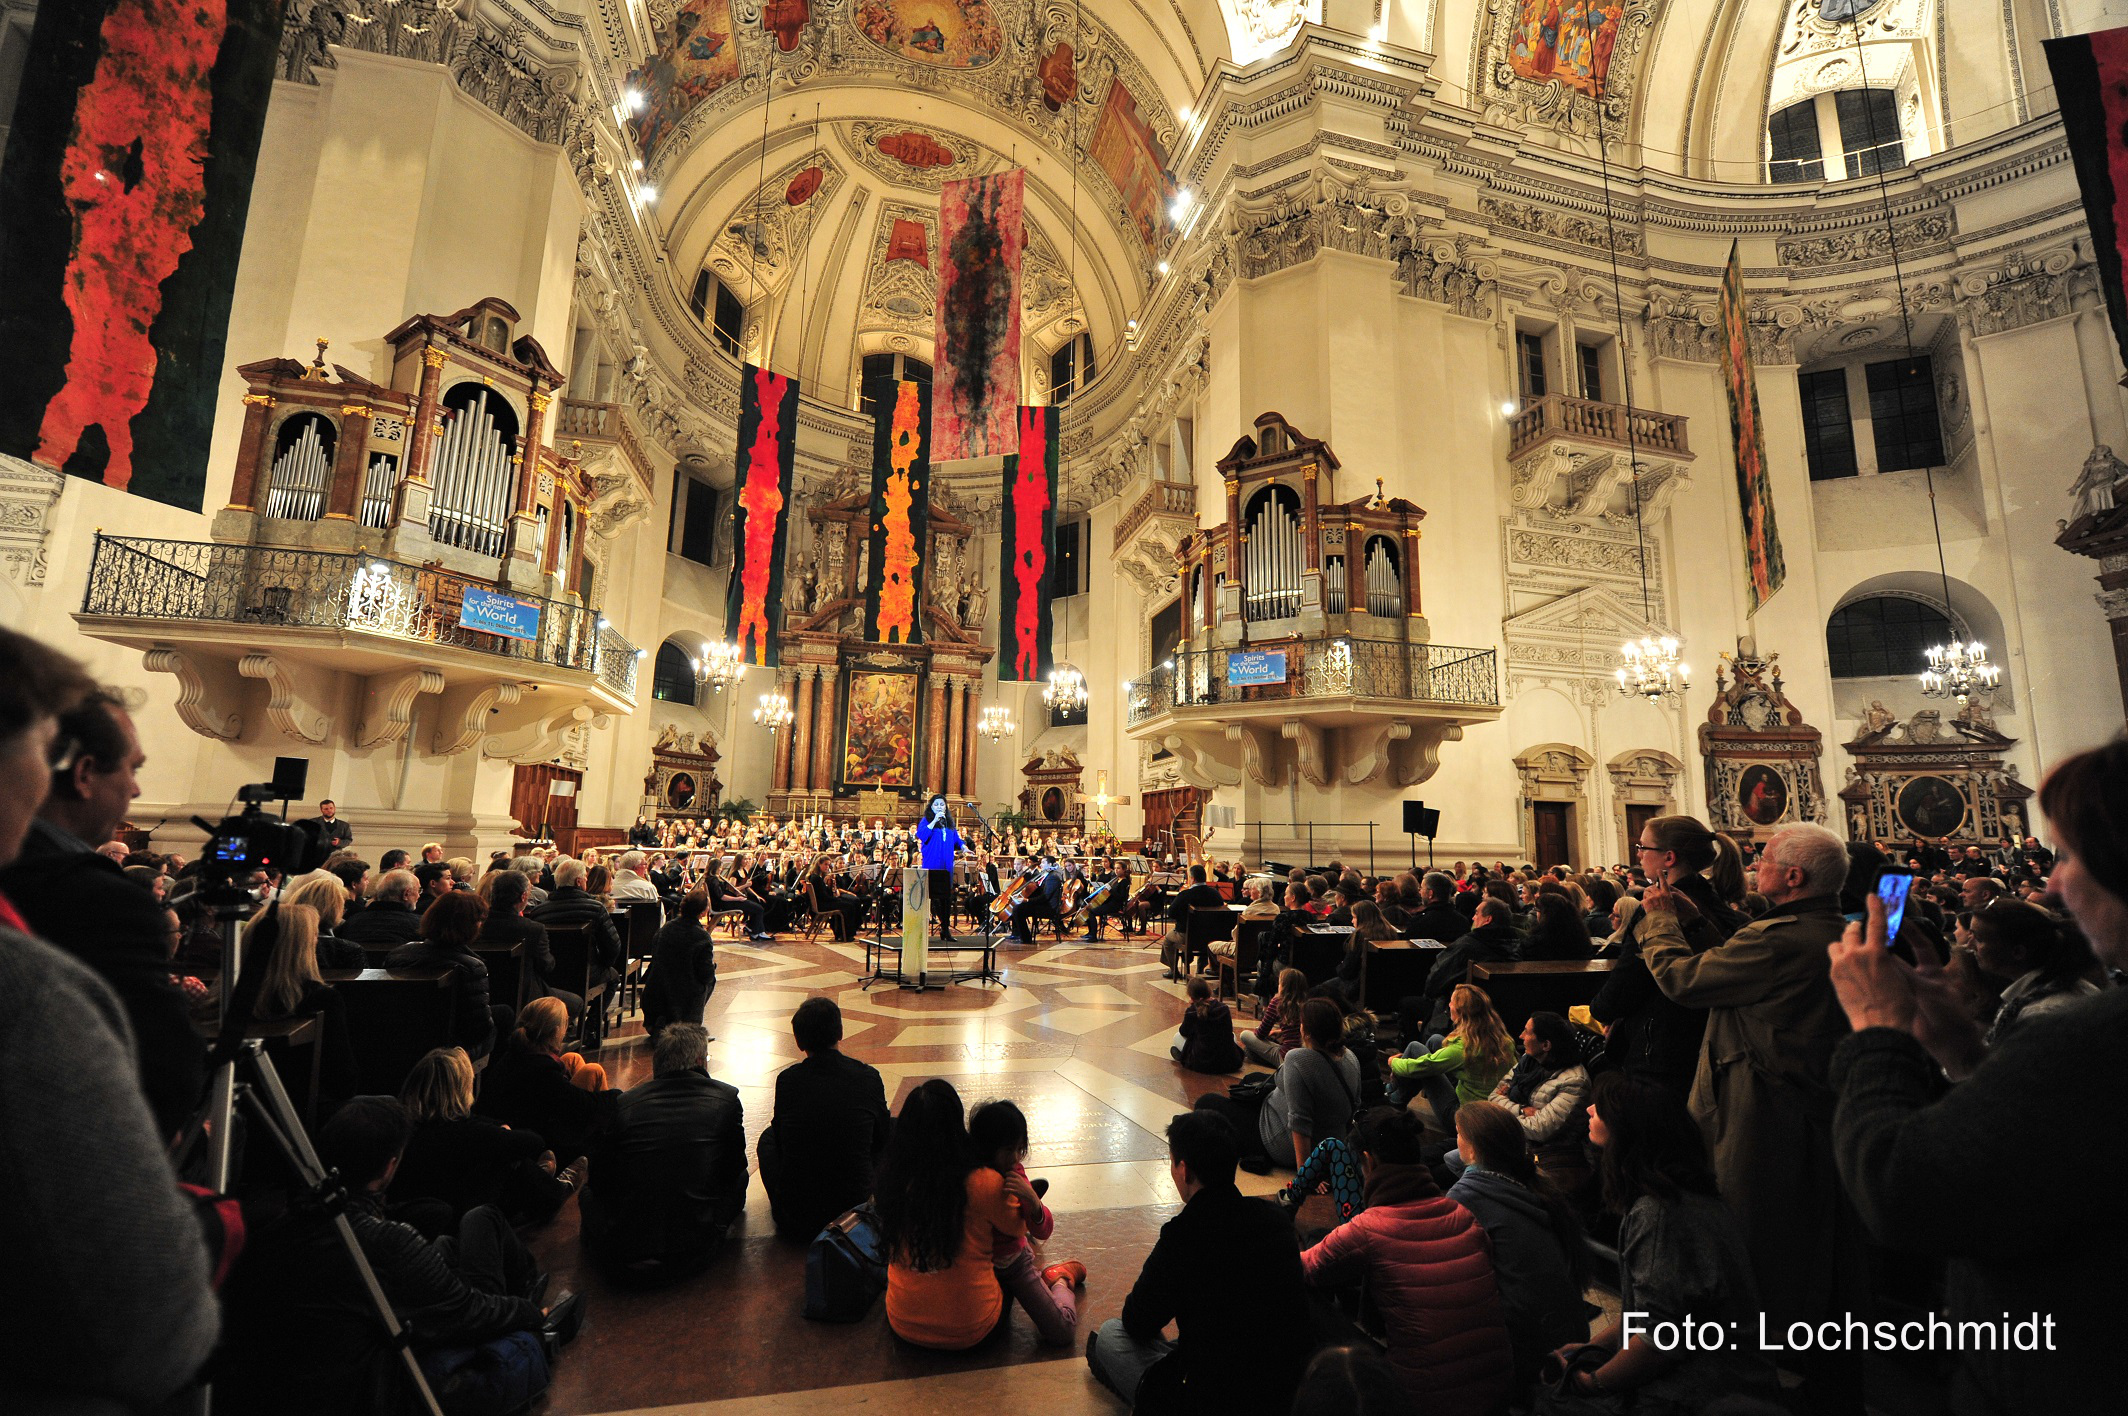 Impressionen vom Opera Concert for Peace im Salzburger Dom. Das große Friedenskonzert auf Initiative von Hubert Paul Kuchar.